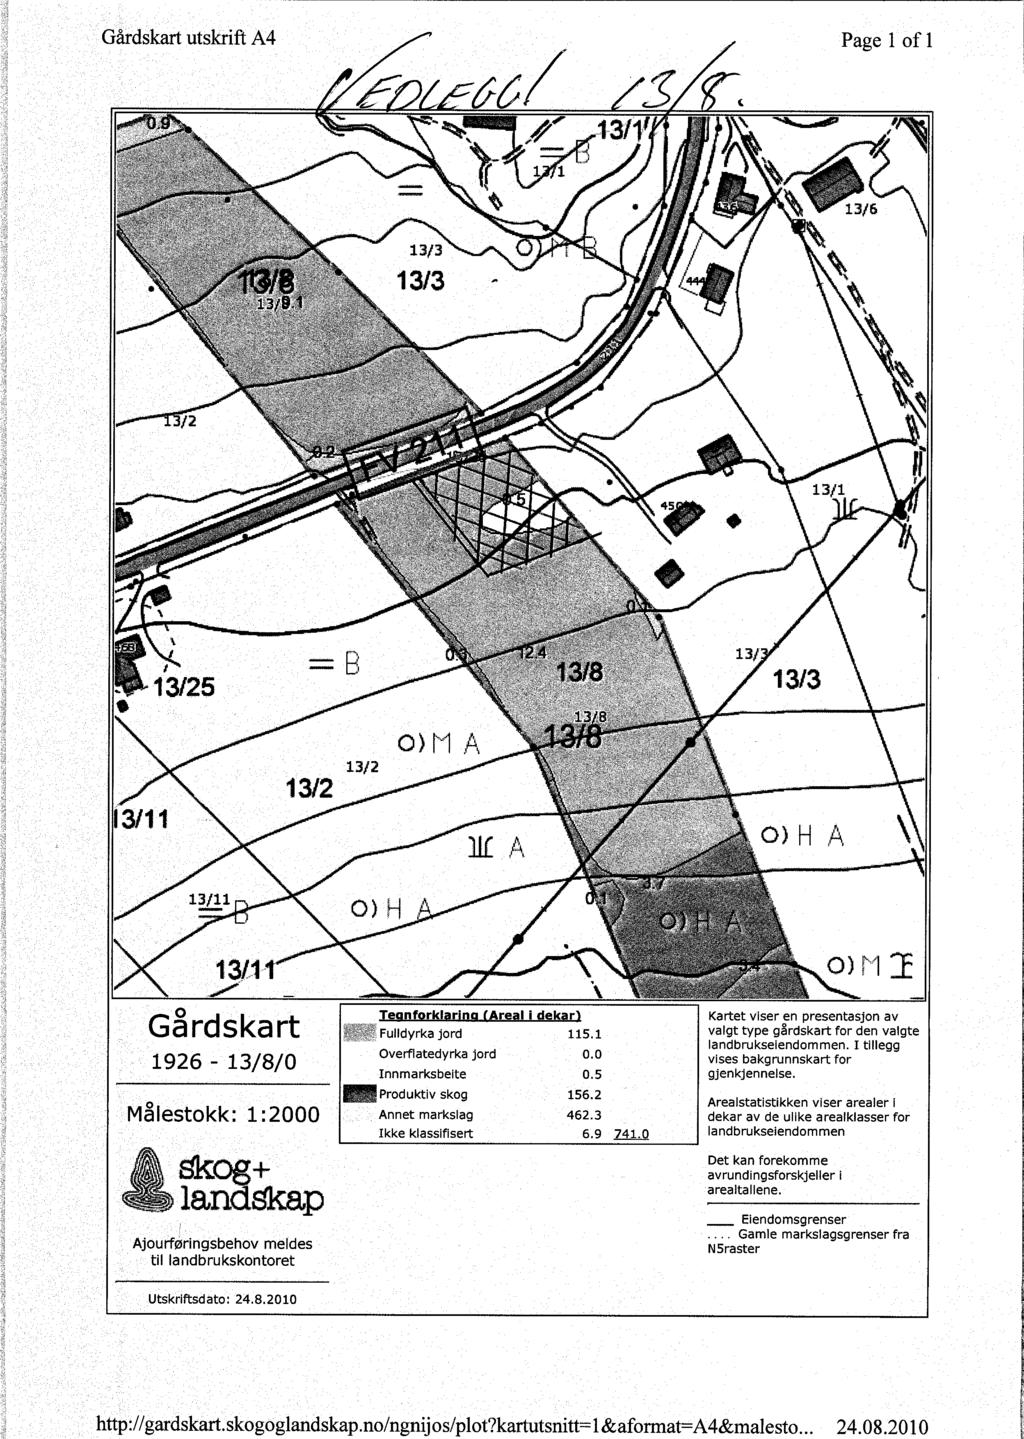 Gårdskart 1926-13/8/0 Målestokk: 1:2000 Ajourføringsbehov meldes til landbrukskontoret Teonforklarinn ( Areal i dekar) Fulldyrka jord 115.1 Overflatedyrka jord 0.0 finnmarksbeite 0.